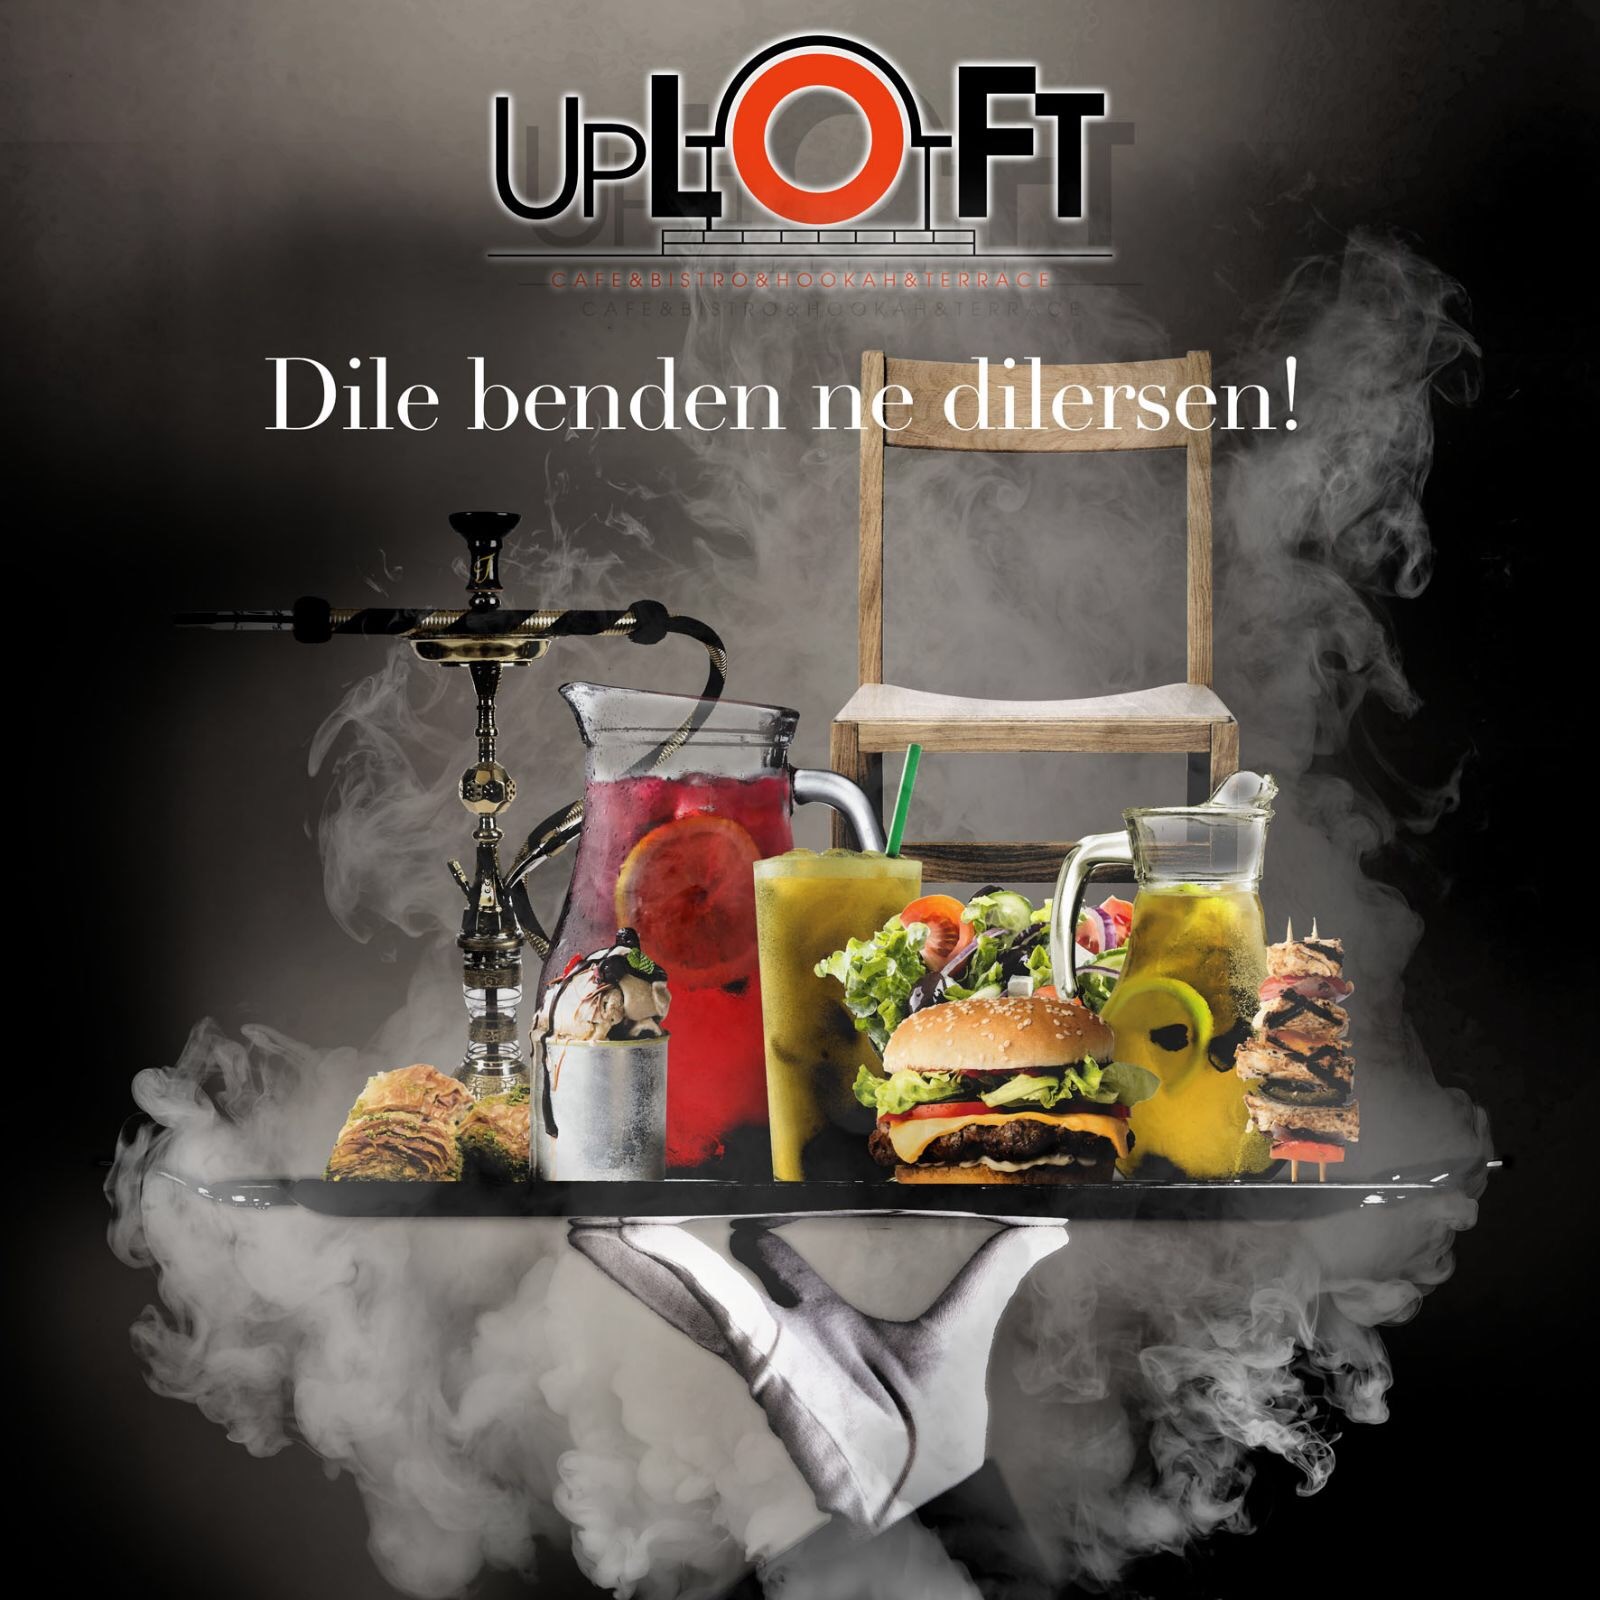 Uploft cafe restaurant Modpos Otomasyon Çözümlerini tercih etti.